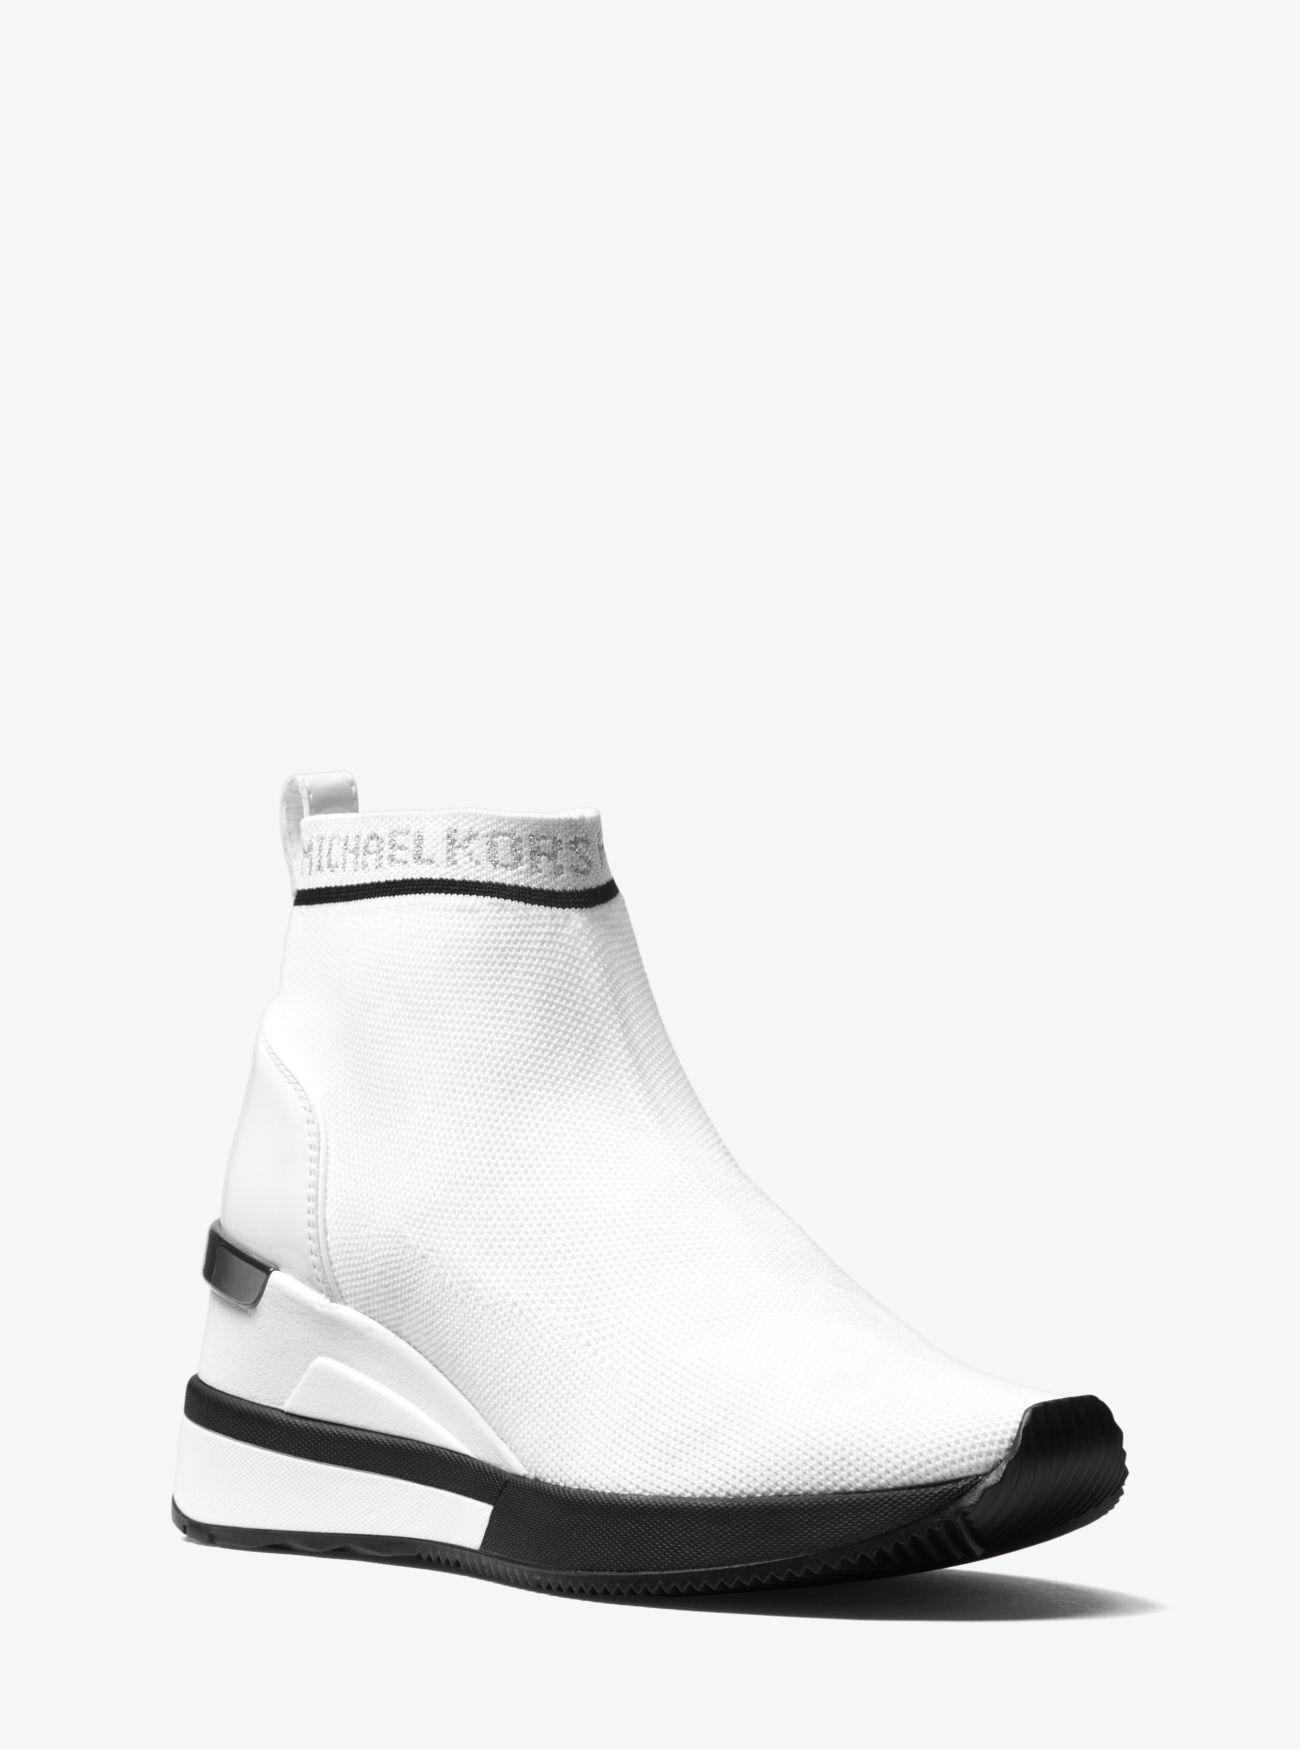 Michael Kors Skyler Logo Stretch-knit Sock Sneaker in White | Lyst